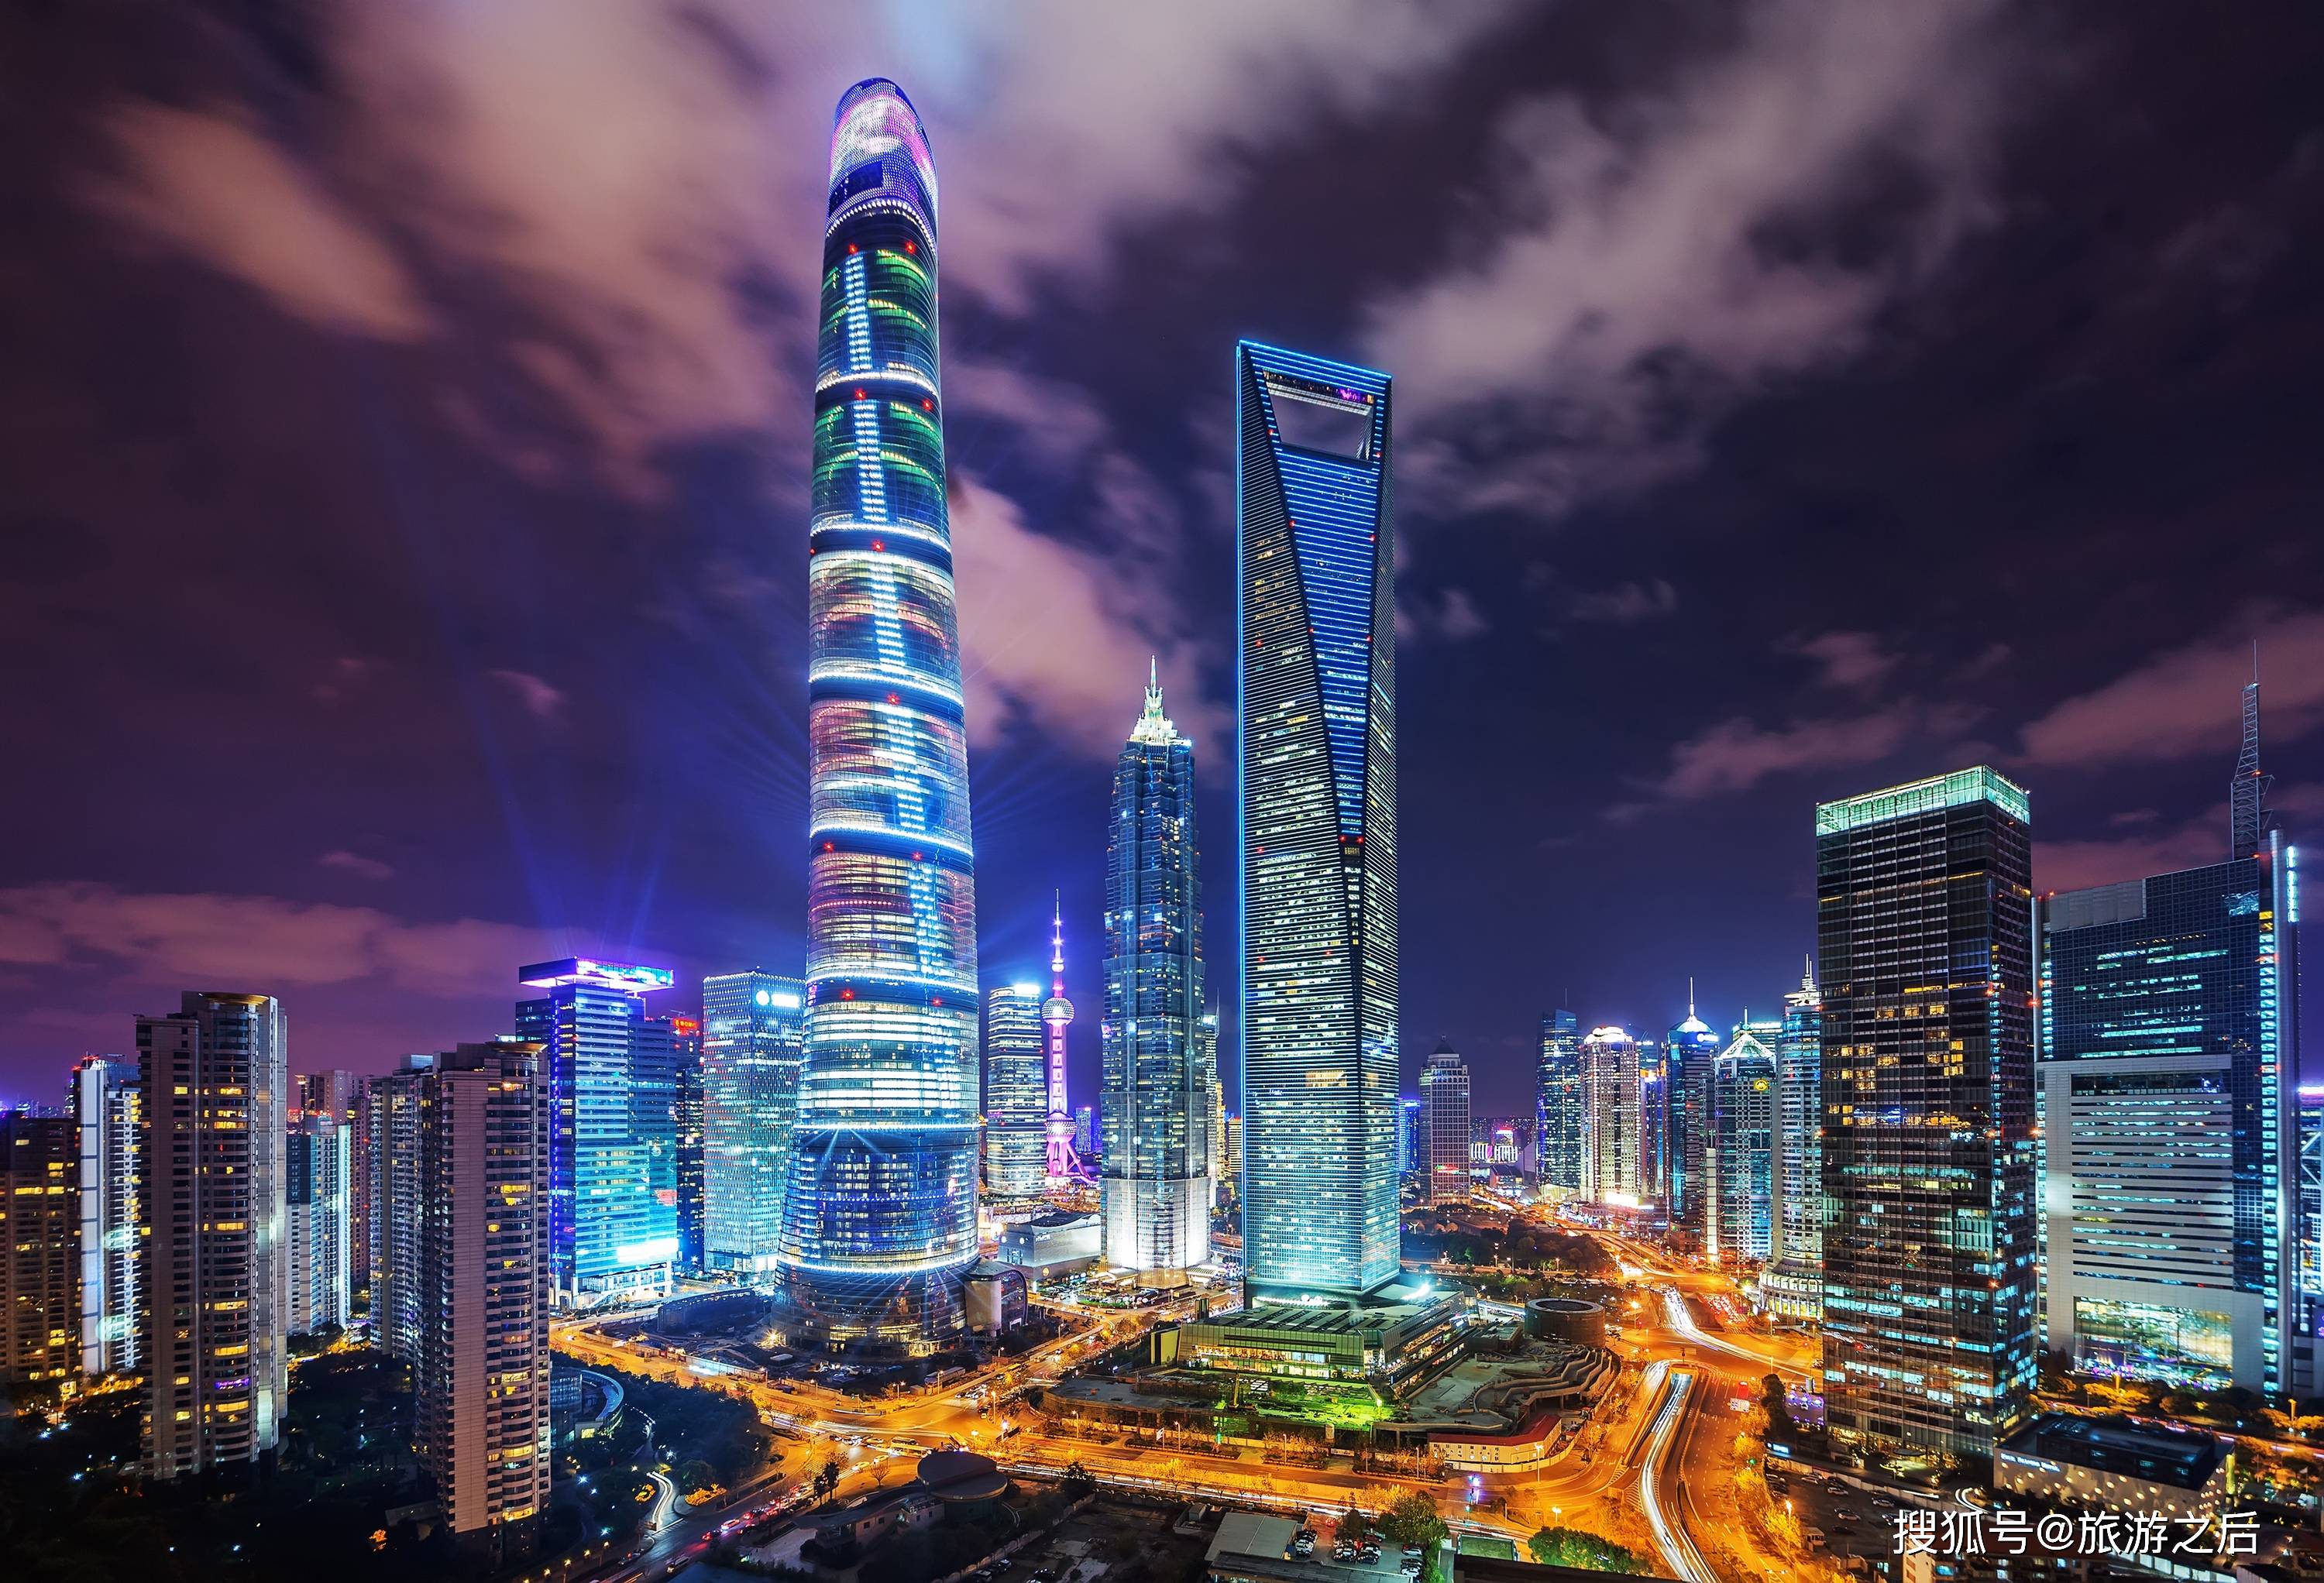 上海中心大厦632米高耸云霄, 美不胜收的城市全景尽收眼底